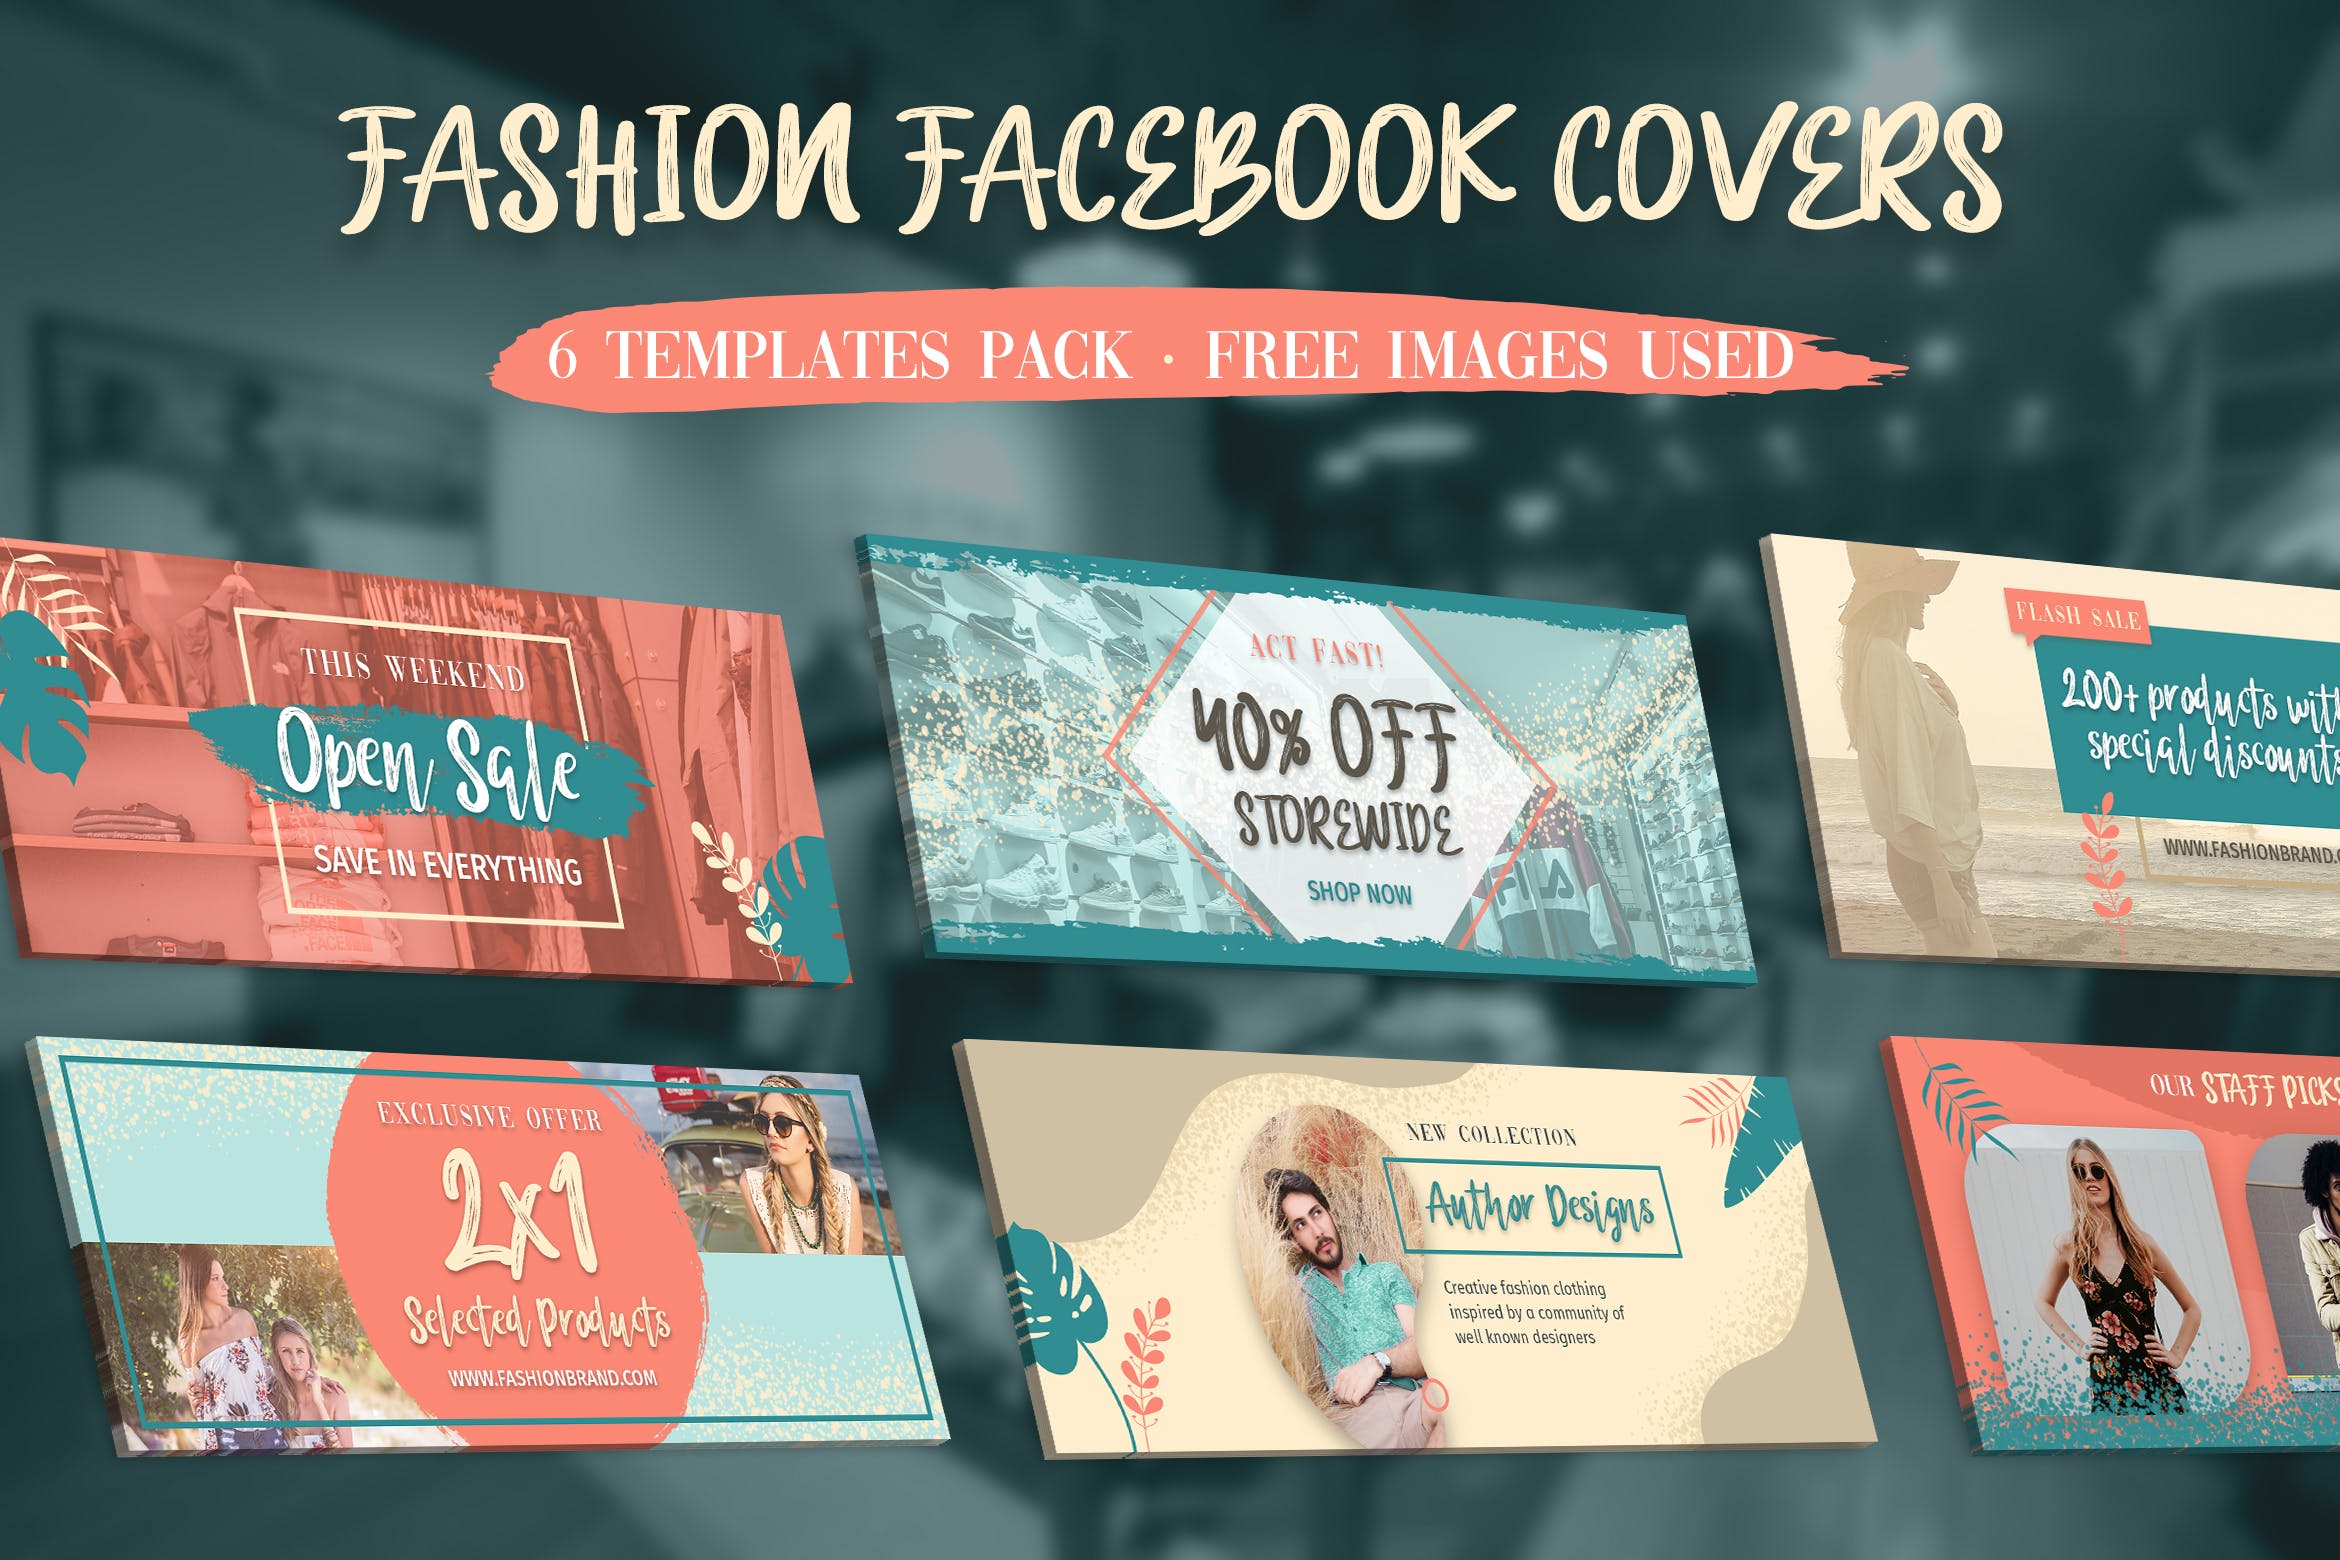 时尚品牌推广Facebook主页封面设计模板16图库精选 Facebook Covers插图